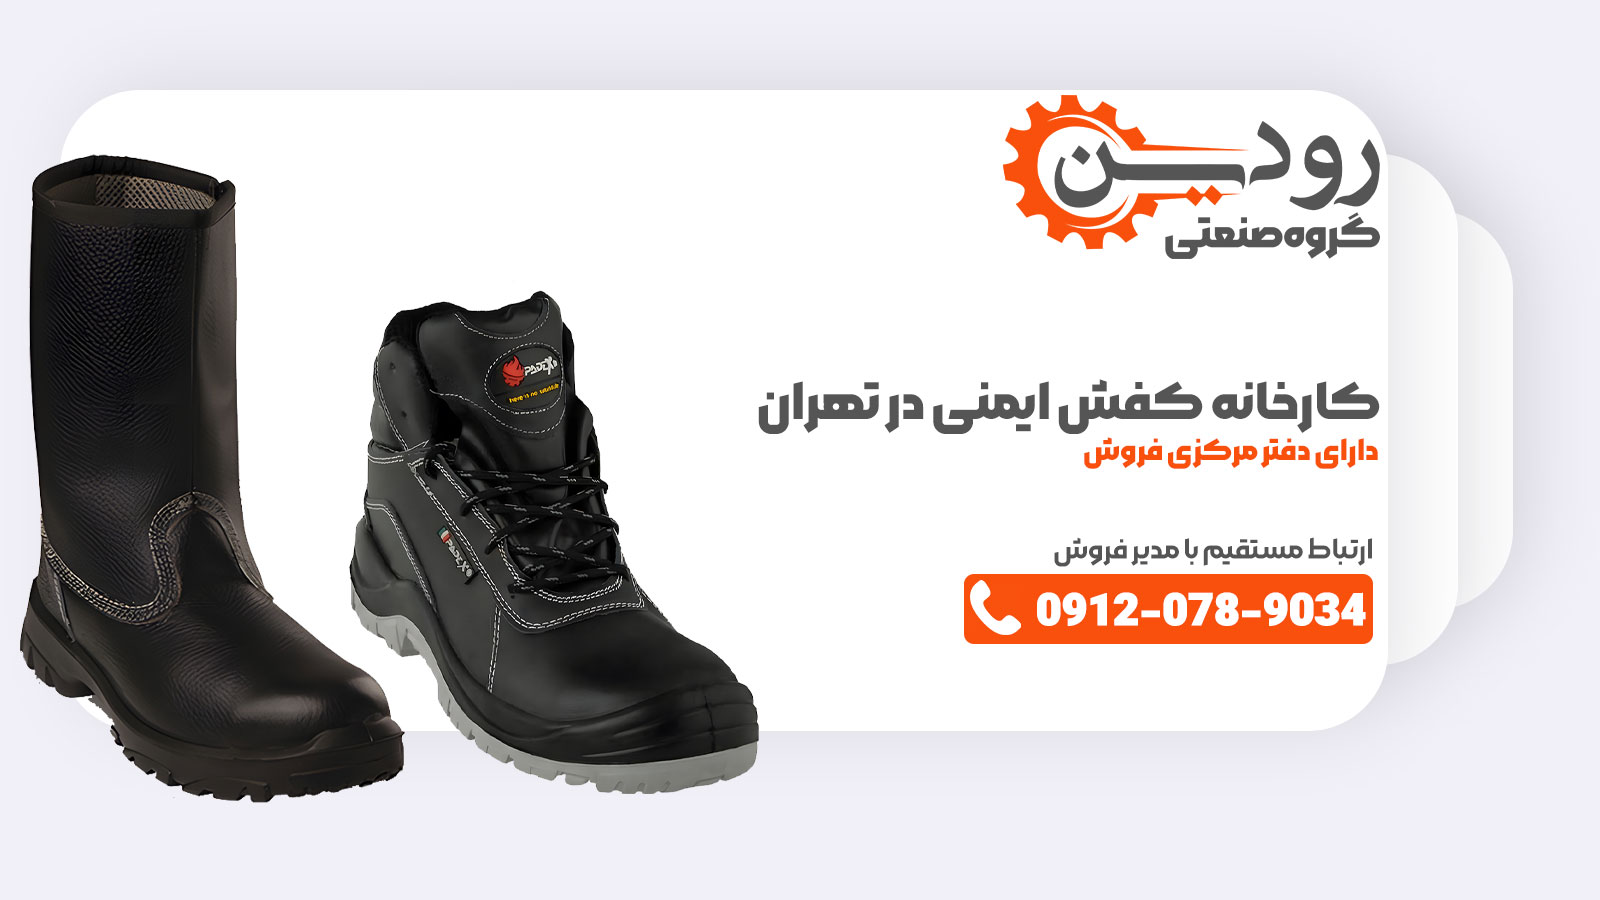 فروشگاه میتواند از کارخانه تولید کفش ایمنی در تهران خرید خود را انجام داده و به صورت تکی به مشتریان عرضه را انجام دهد.